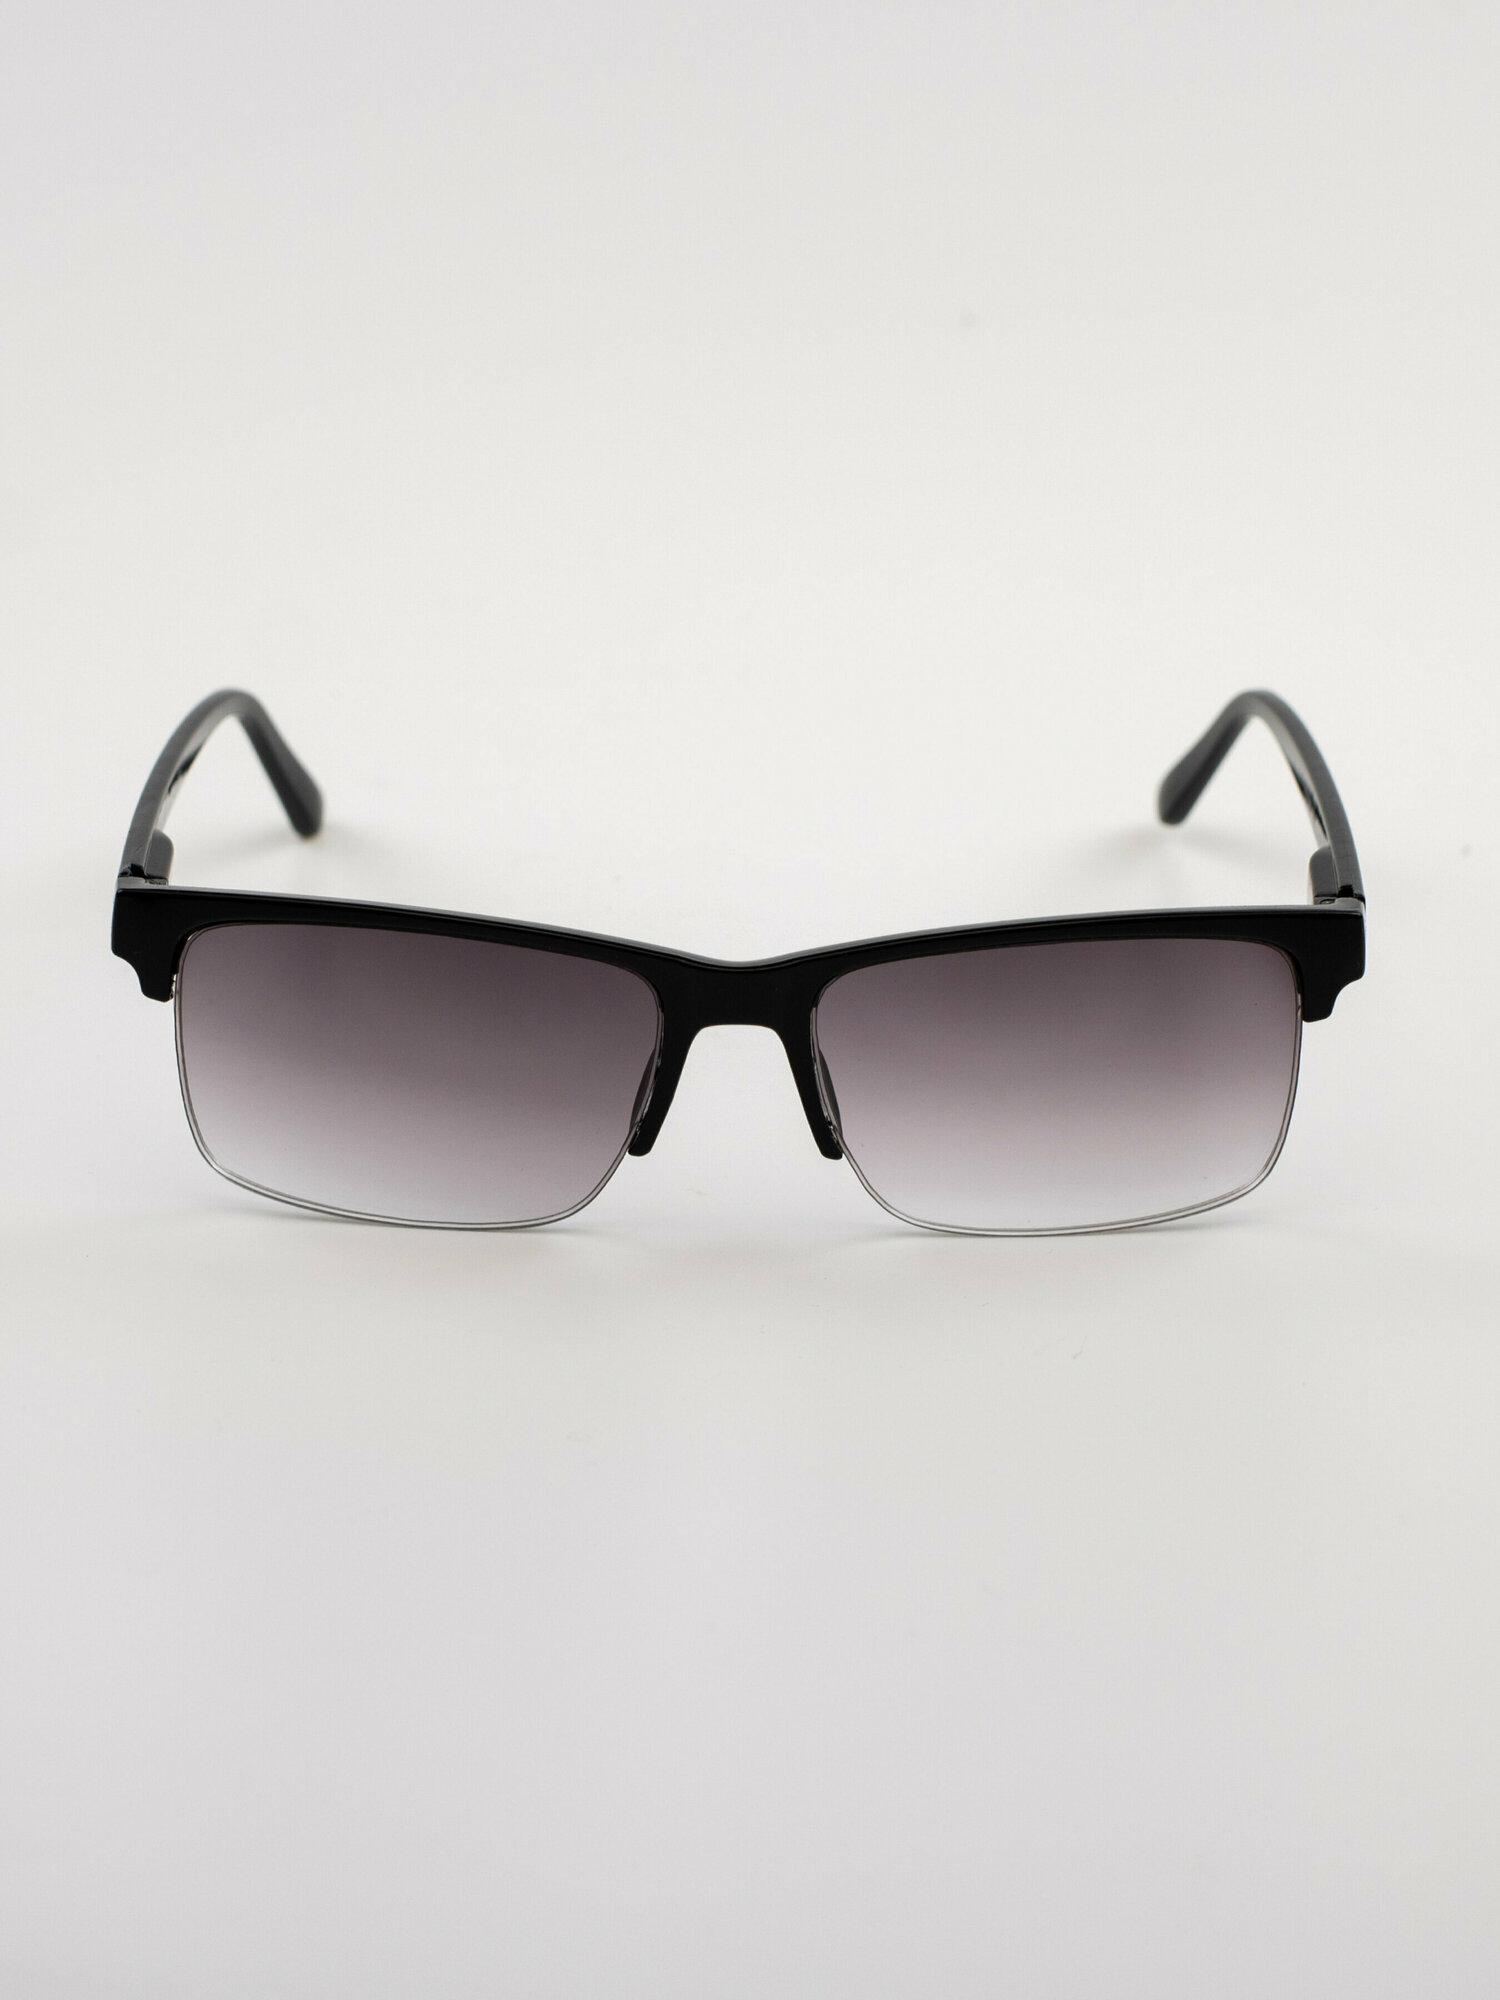 Очки для зрения -4 готовые корригирующие очки с диоптрией тонированные линзы